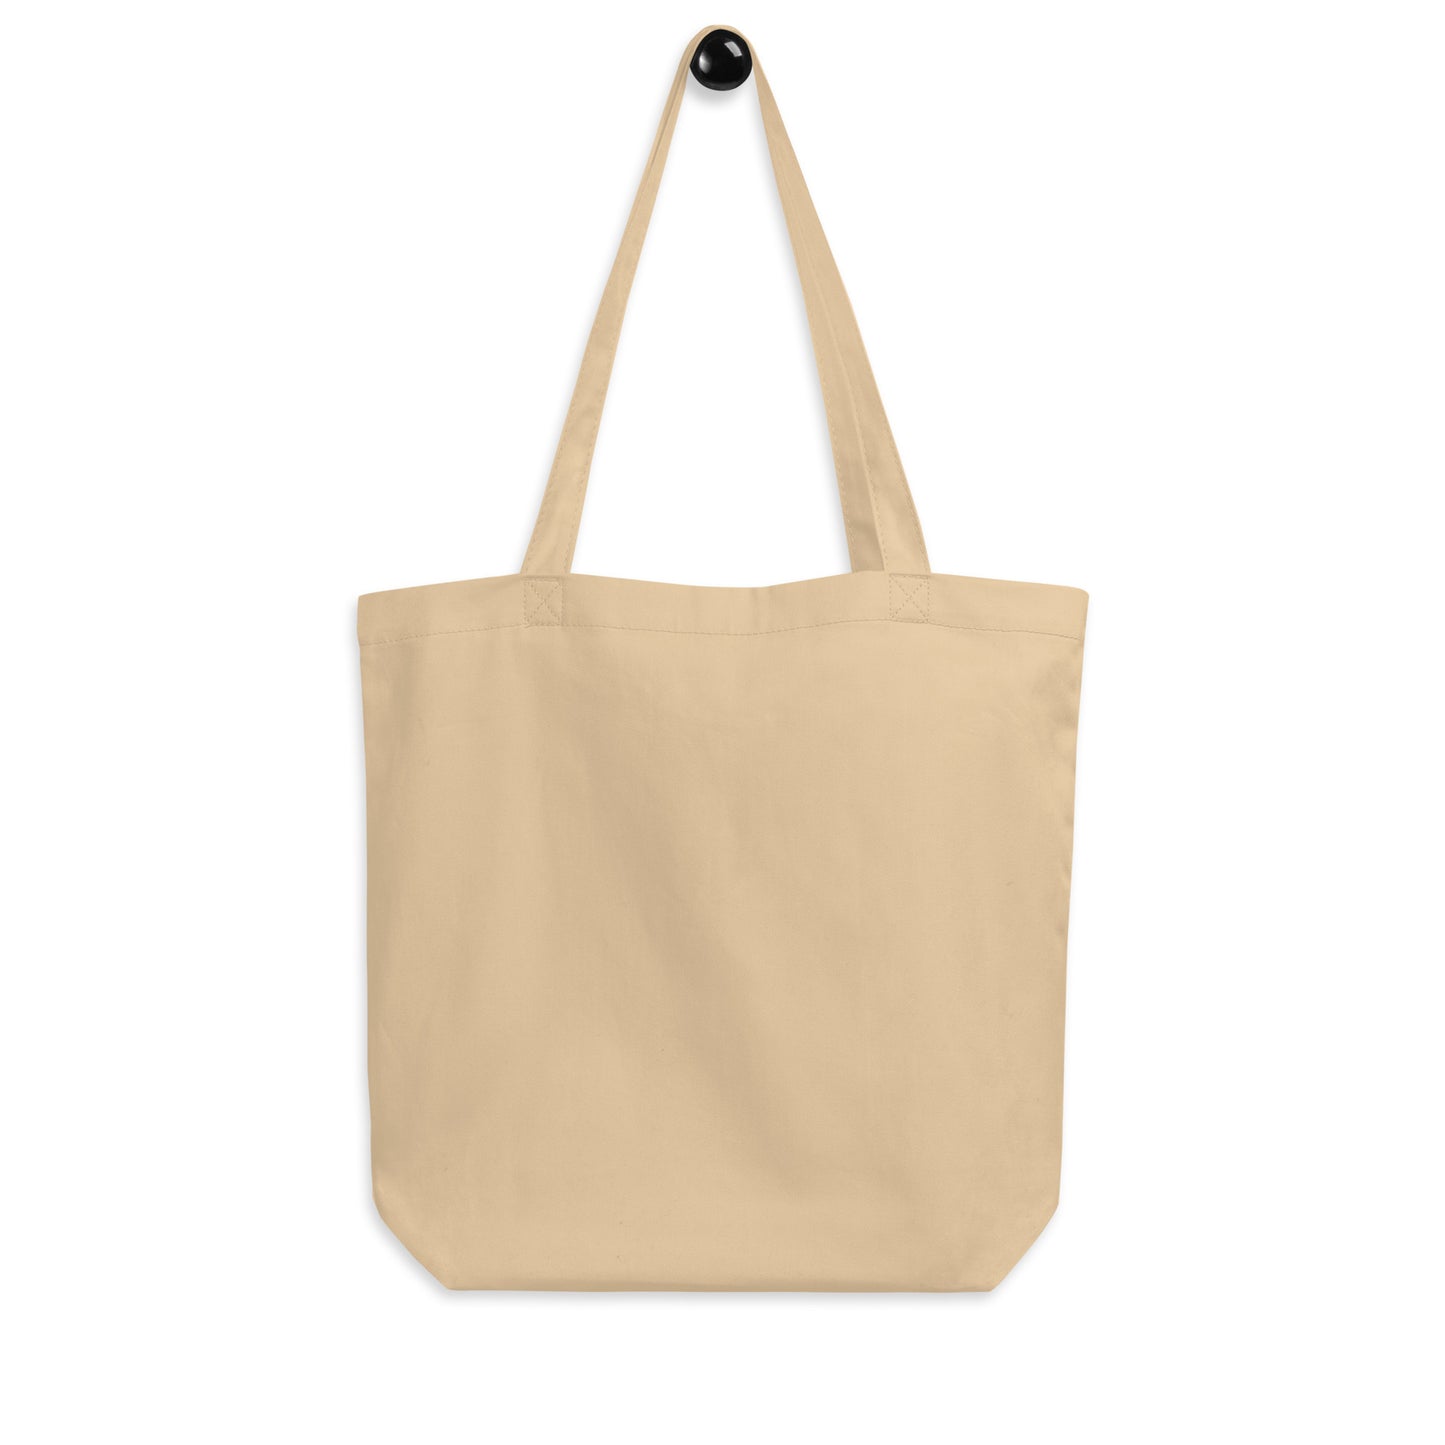 Cool Travel Gift Organic Tote Bag - Viking Blue • SJC San Jose • YHM Designs - Image 05